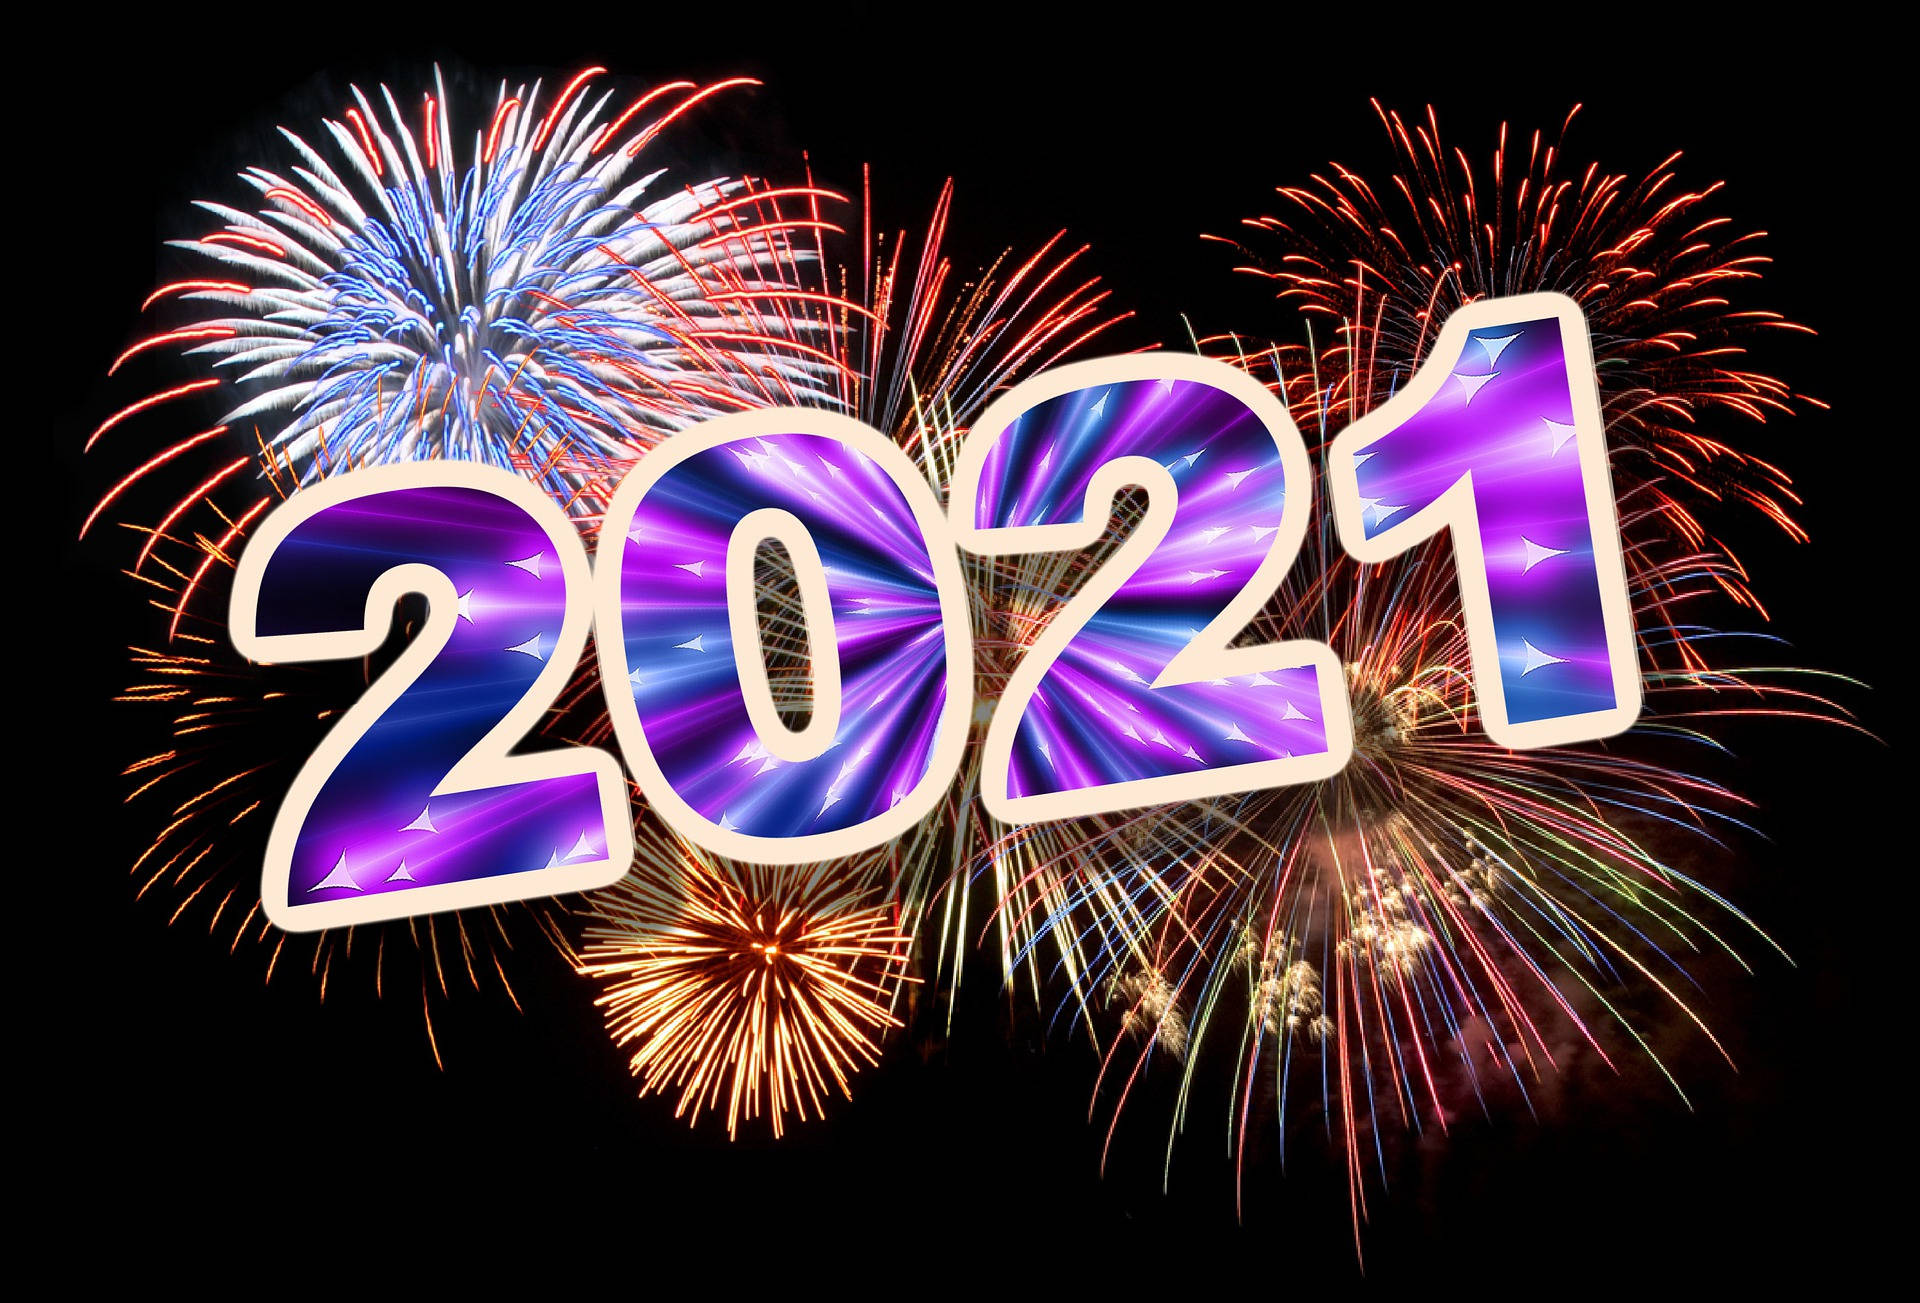 Fireworks 2021 Desktop Background